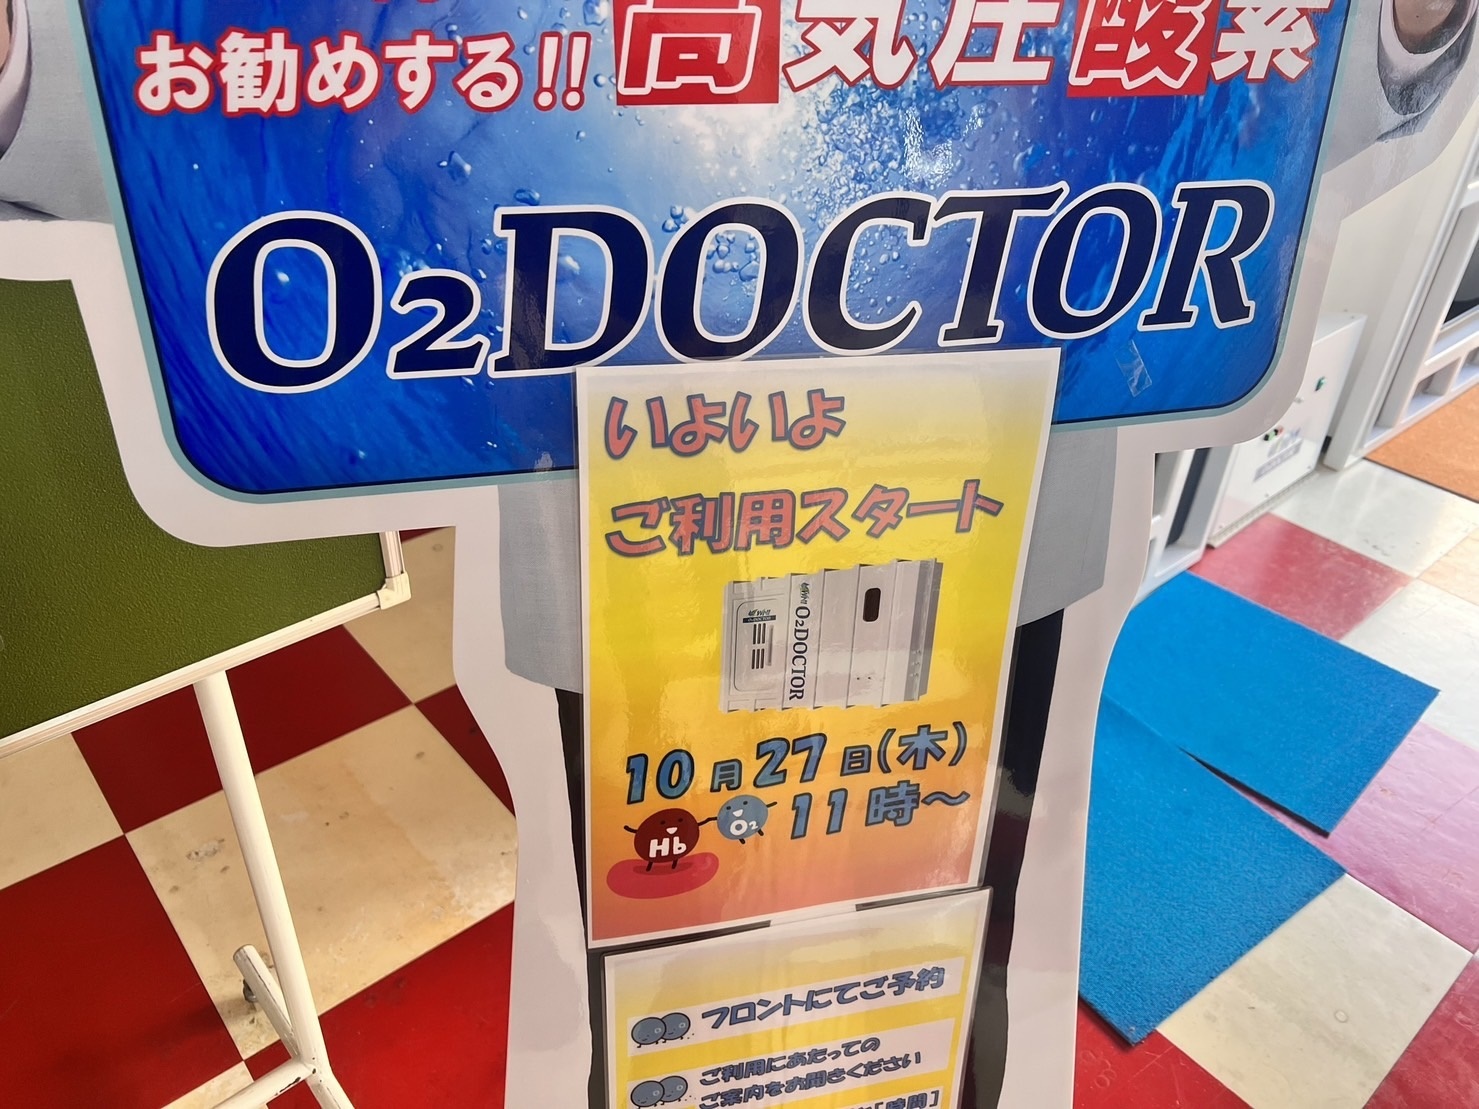 オーツードクター(O2 Doctor)